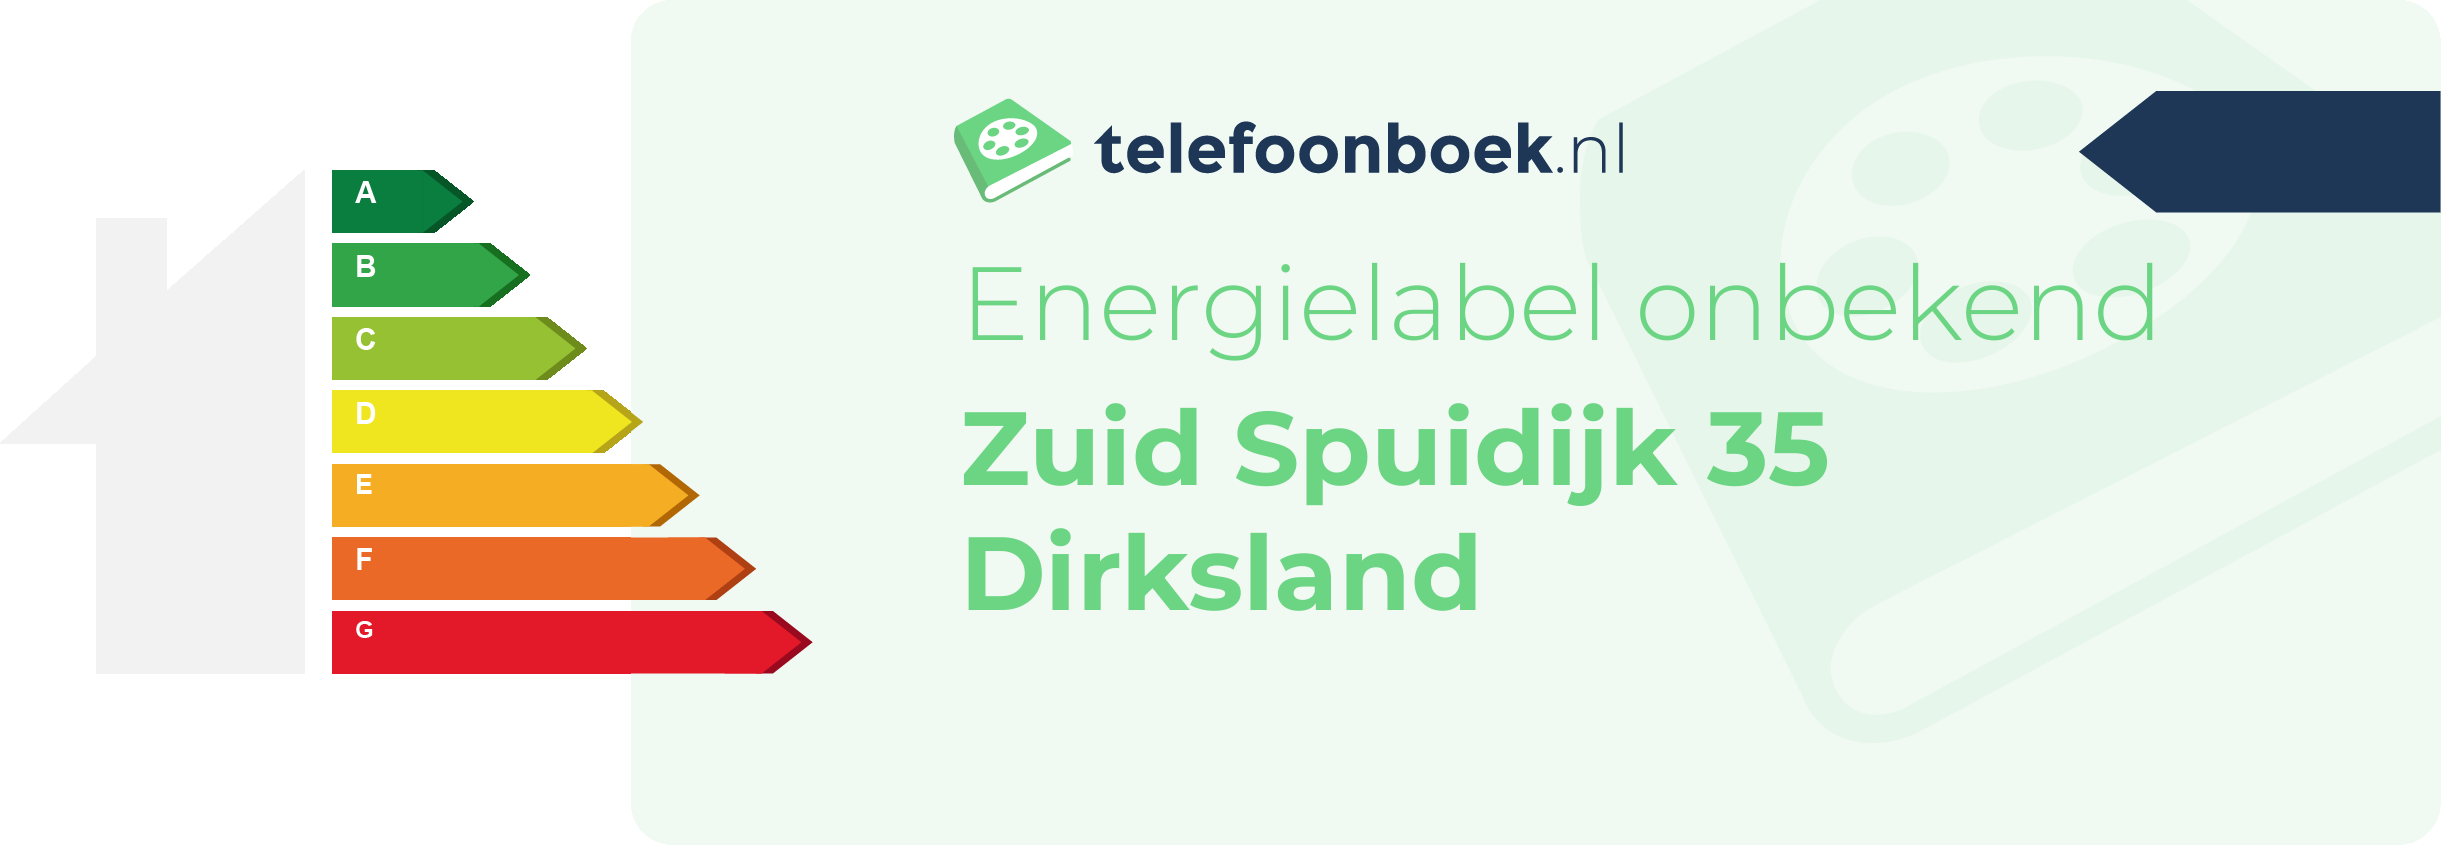 Energielabel Zuid Spuidijk 35 Dirksland